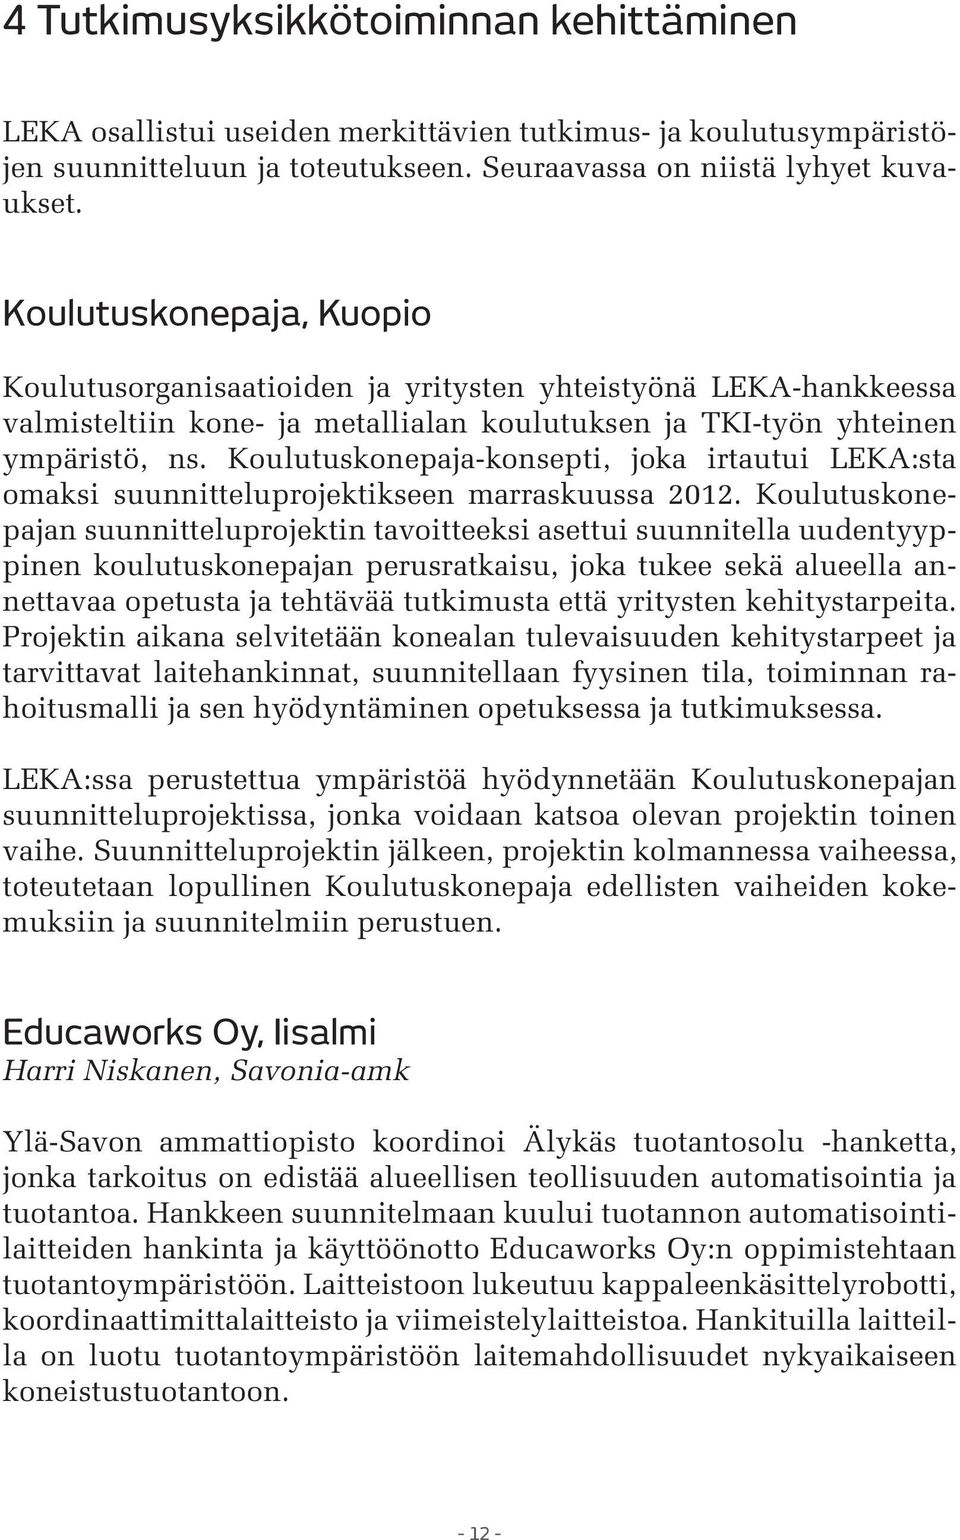 Koulutuskonepaja-konsepti, joka irtautui LEKA:sta omaksi suunnitteluprojektikseen marraskuussa 2012.